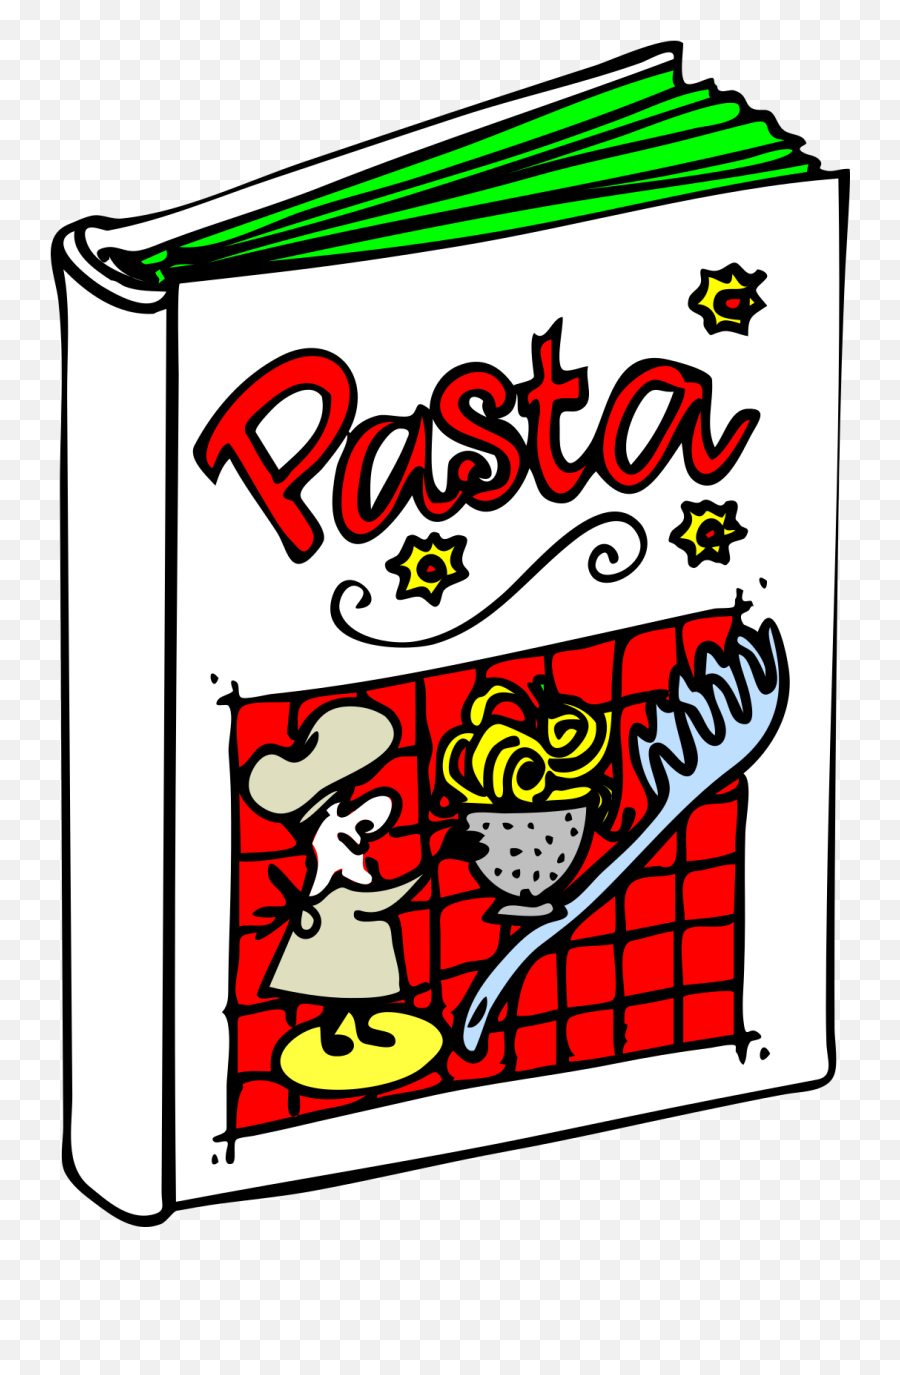 Italian Cuisine - Italian Food Clip Art Png,Italian Food Png